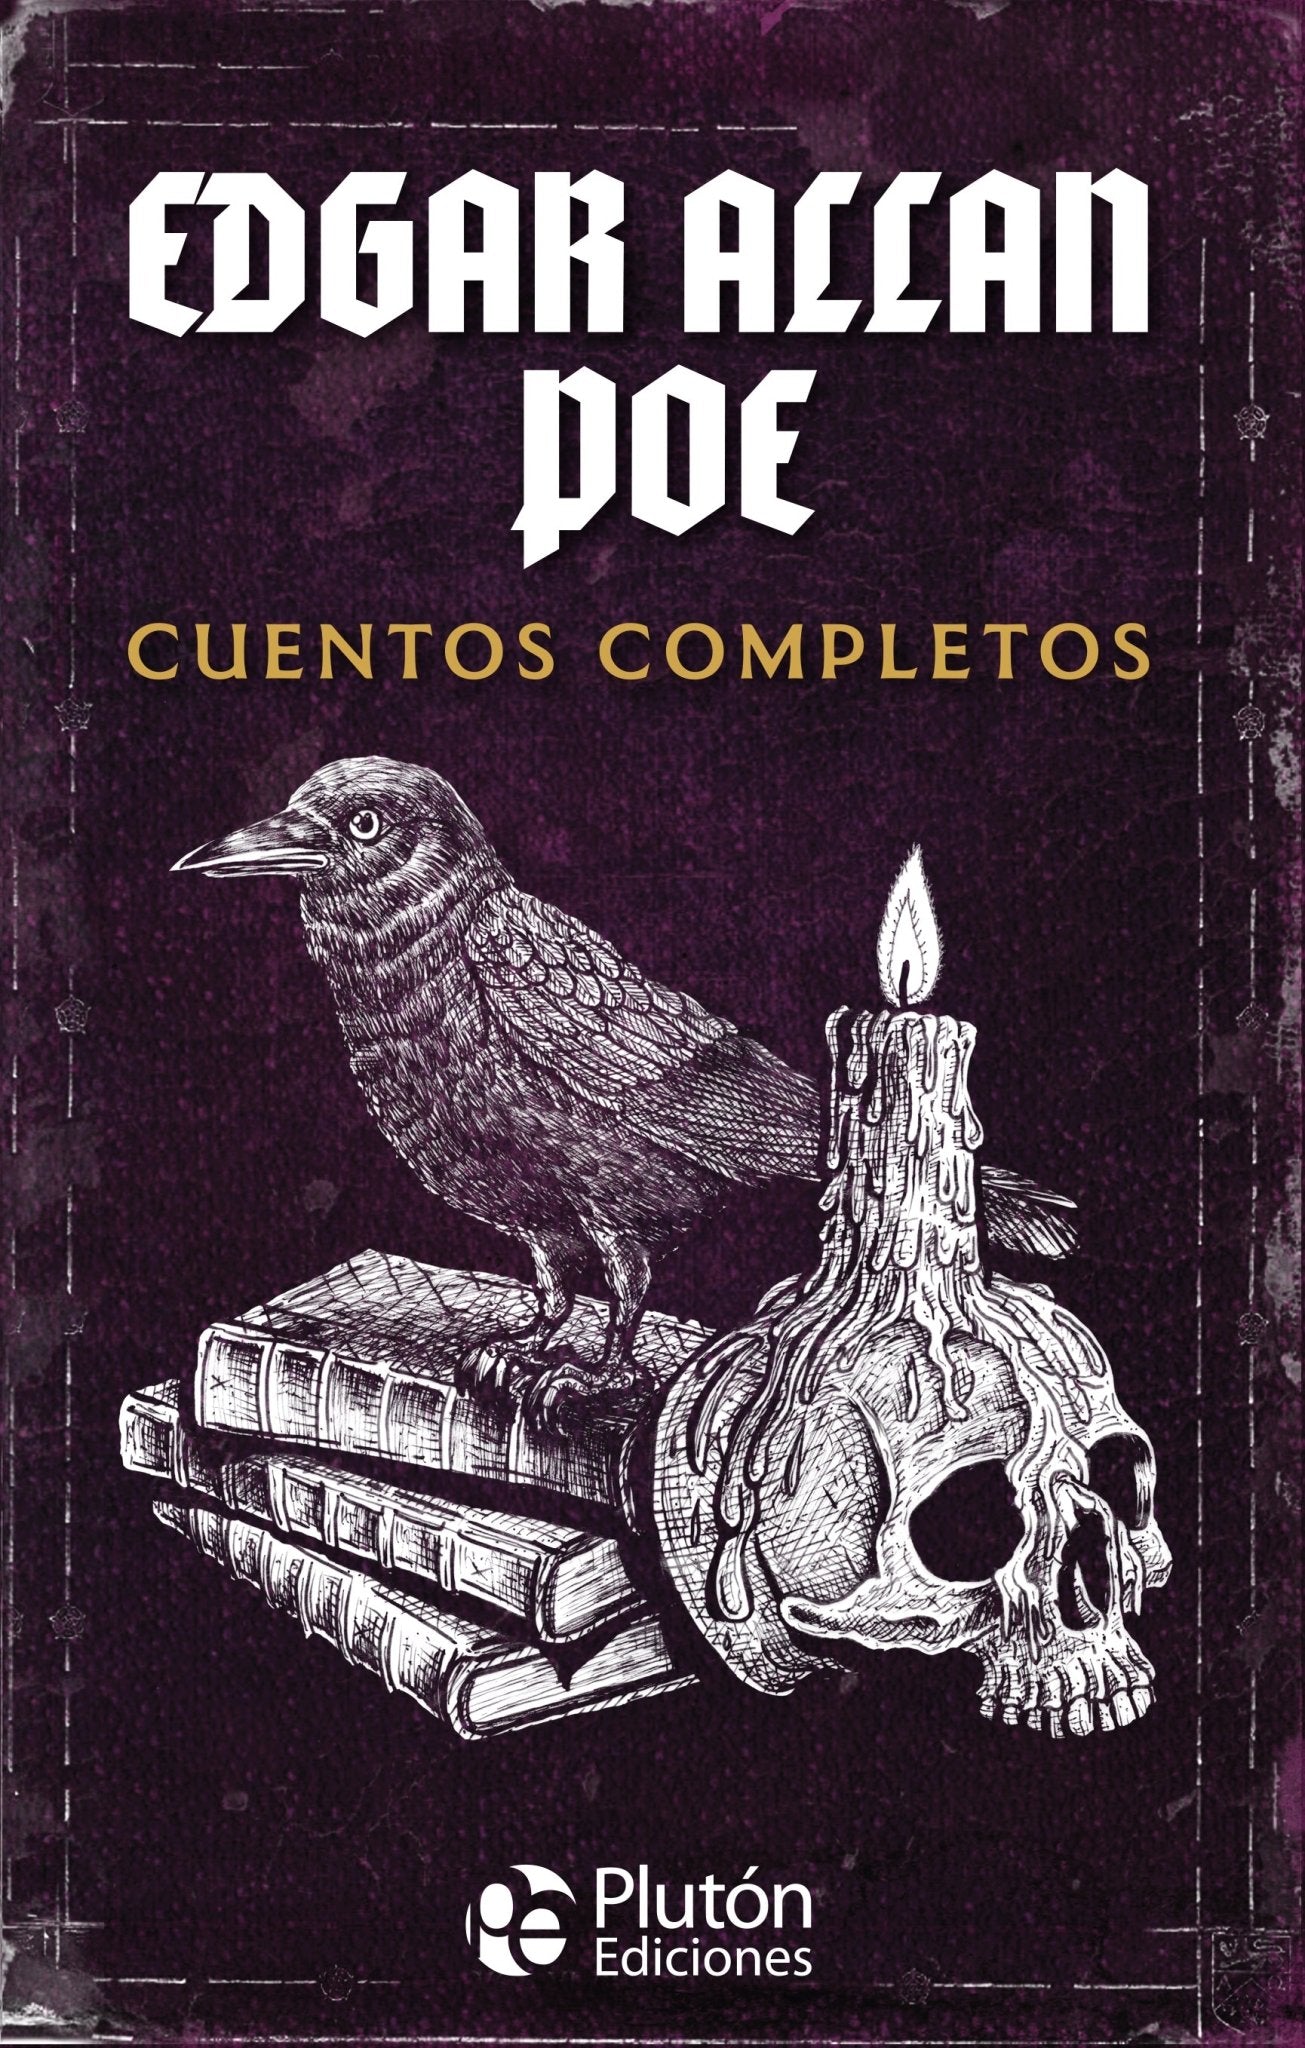 Edgar Allan Poe Cuentos Completos Col. Oro